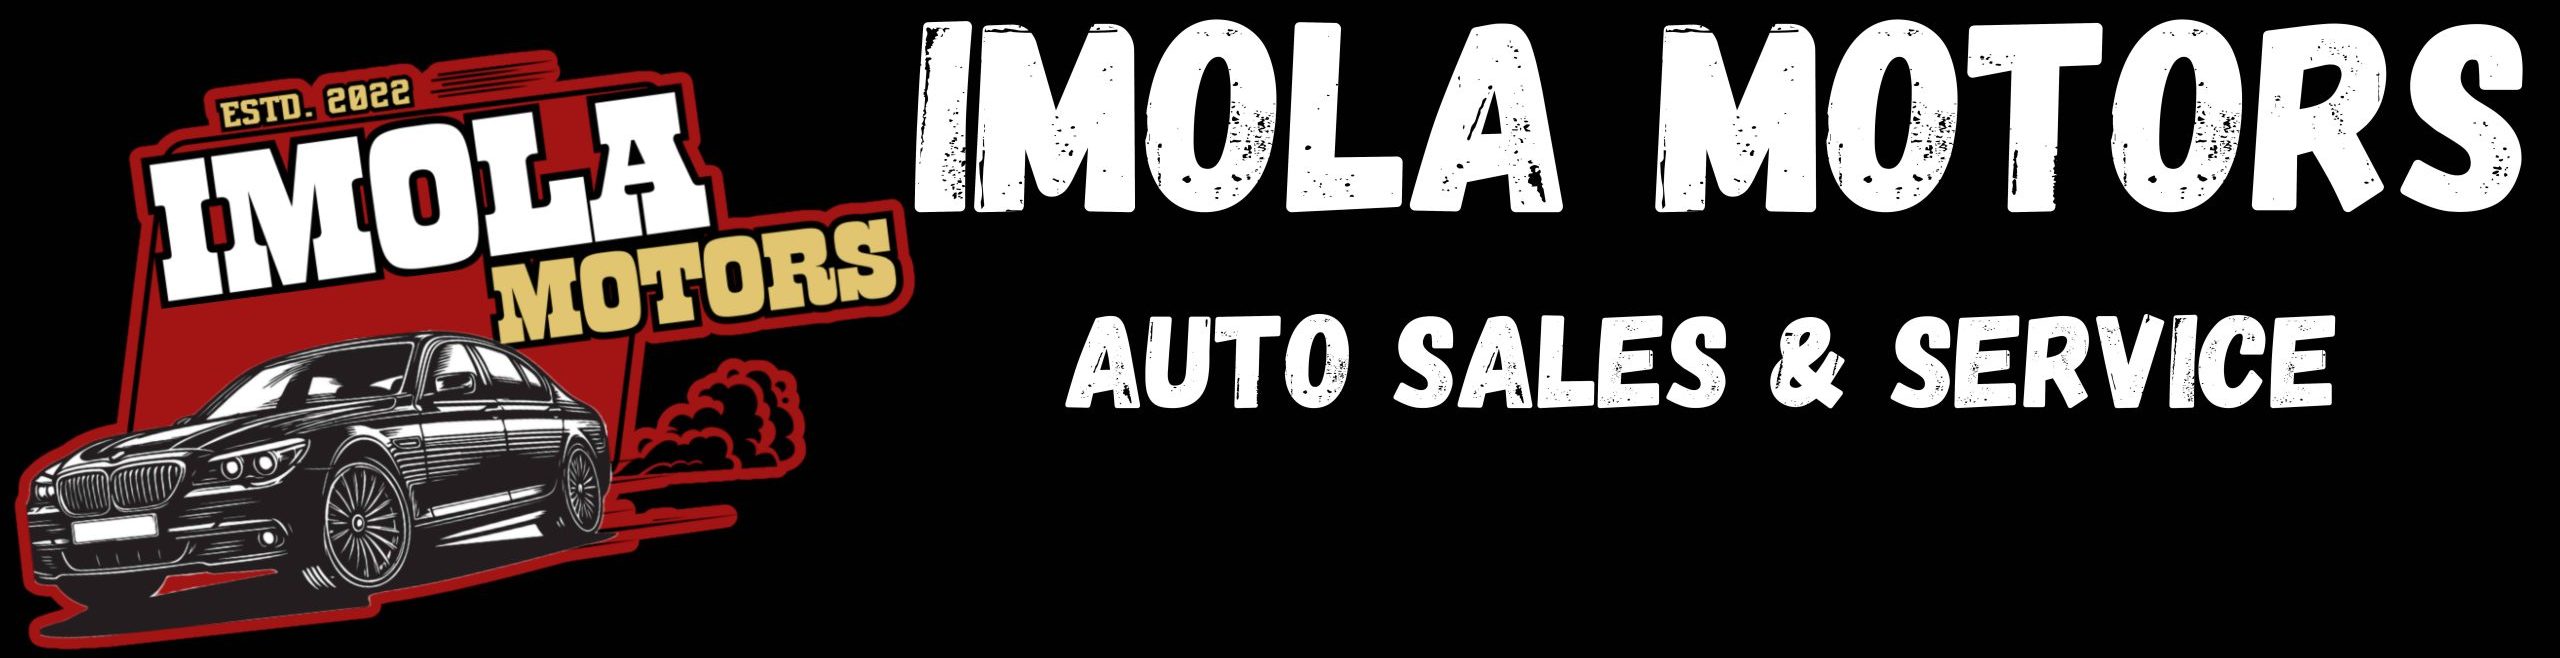 IMOLA MOTORS LLC